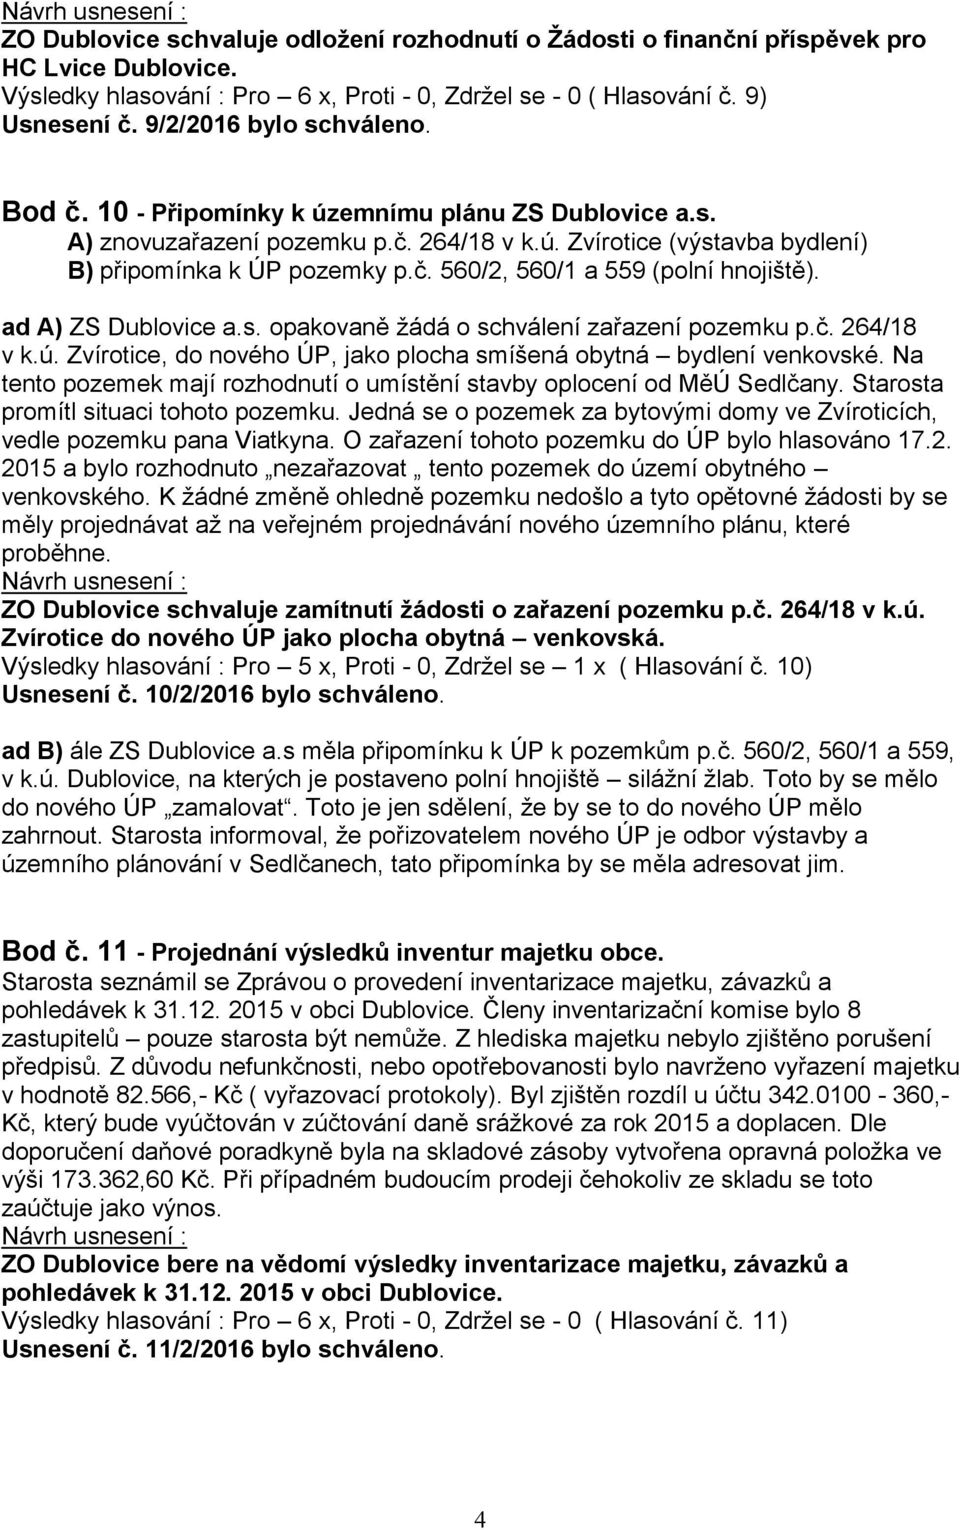 ad A) ZS Dublovice a.s. opakovaně žádá o schválení zařazení pozemku p.č. 264/18 v k.ú. Zvírotice, do nového ÚP, jako plocha smíšená obytná bydlení venkovské.